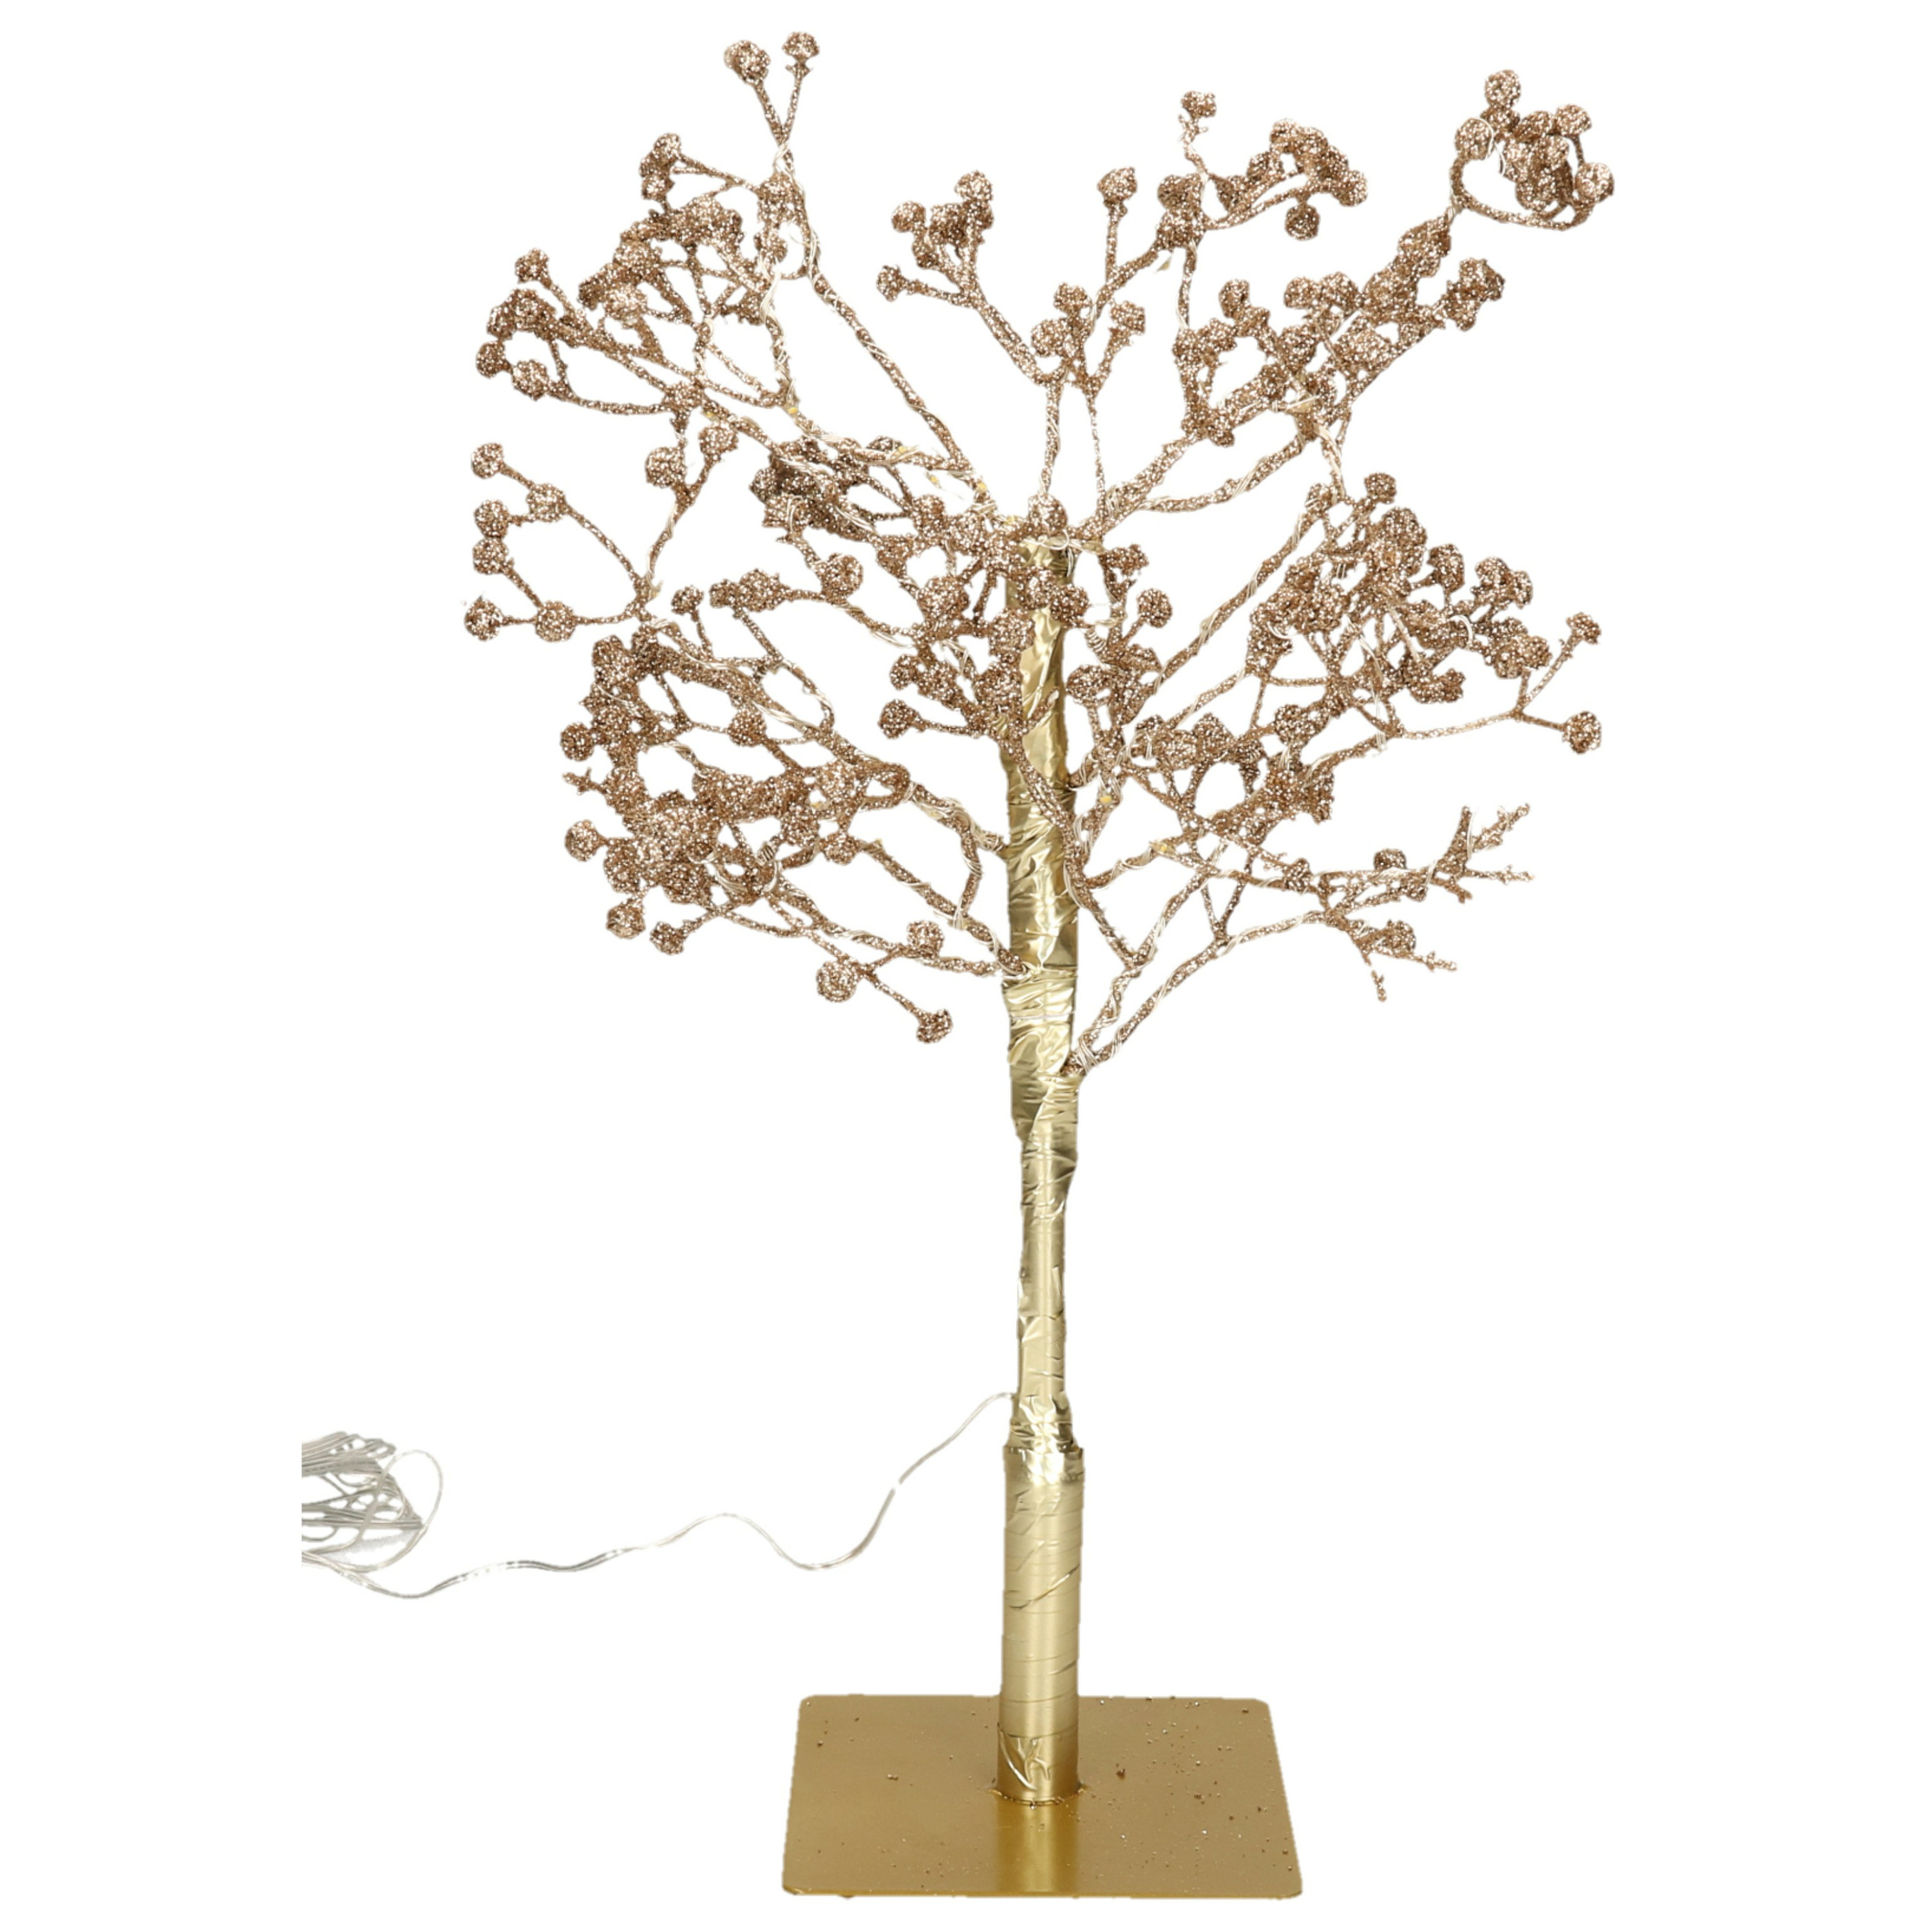 Lichtboom - 48 led lichtjes - H50 cm -goud -verlichte figuren boompjes